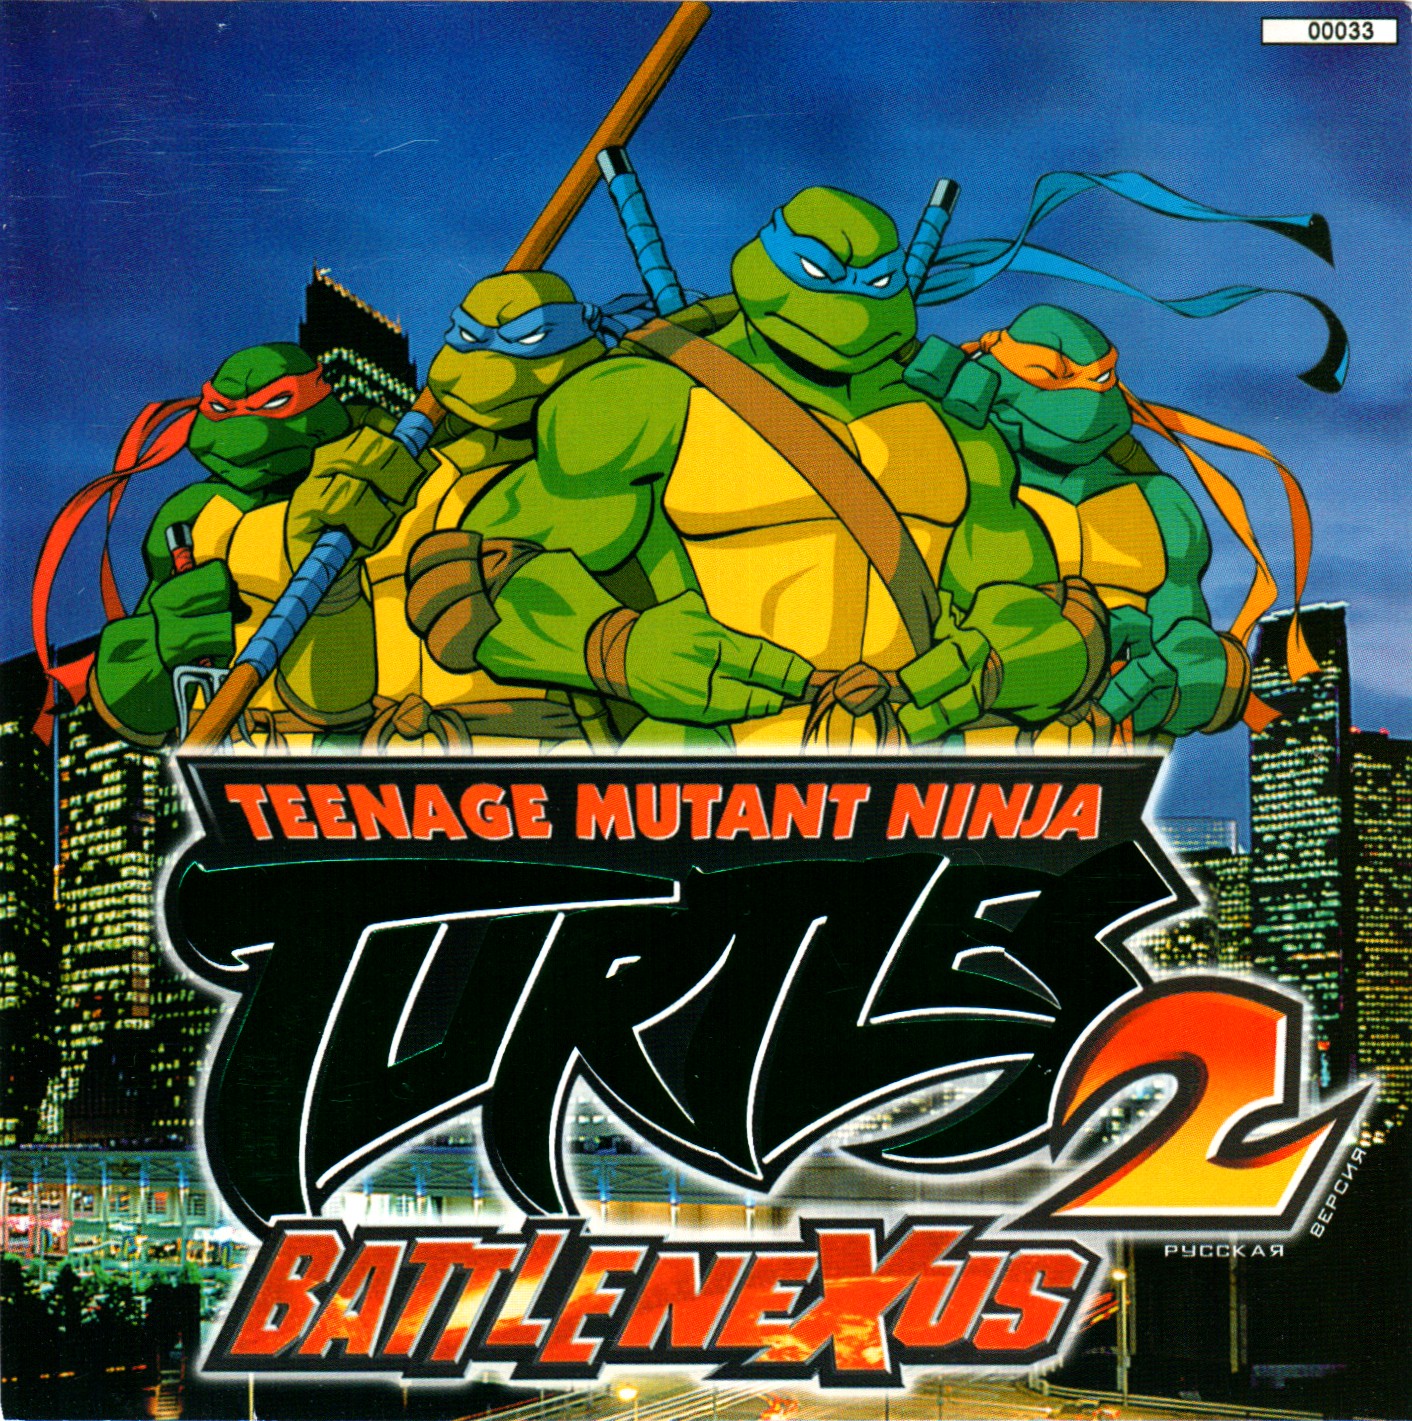 Teenage mutant ninja turtles 2 battle nexus steam фото 13